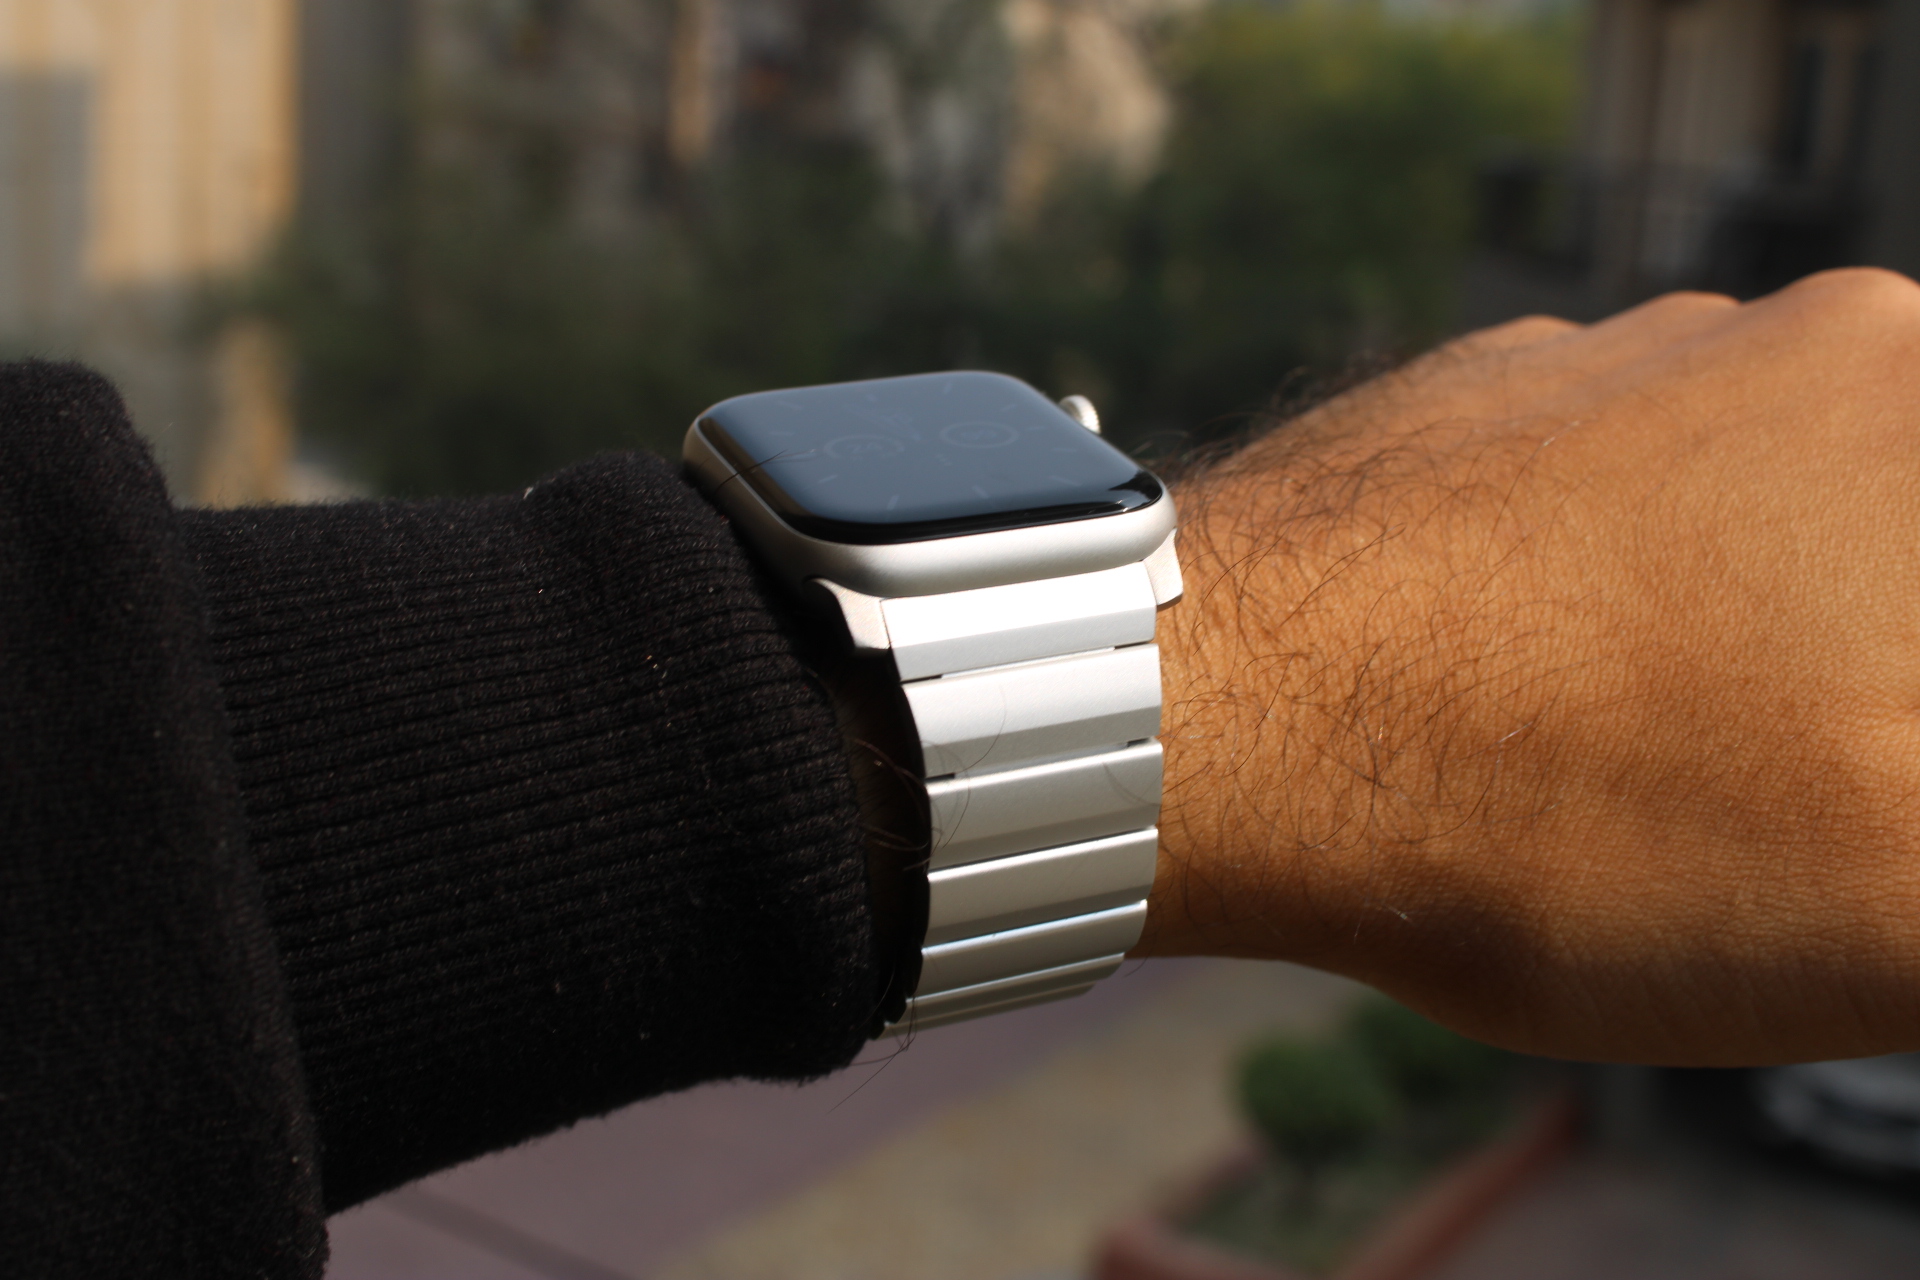 Apple Watch SE with nomadic aluminum bracelet on the wrist.